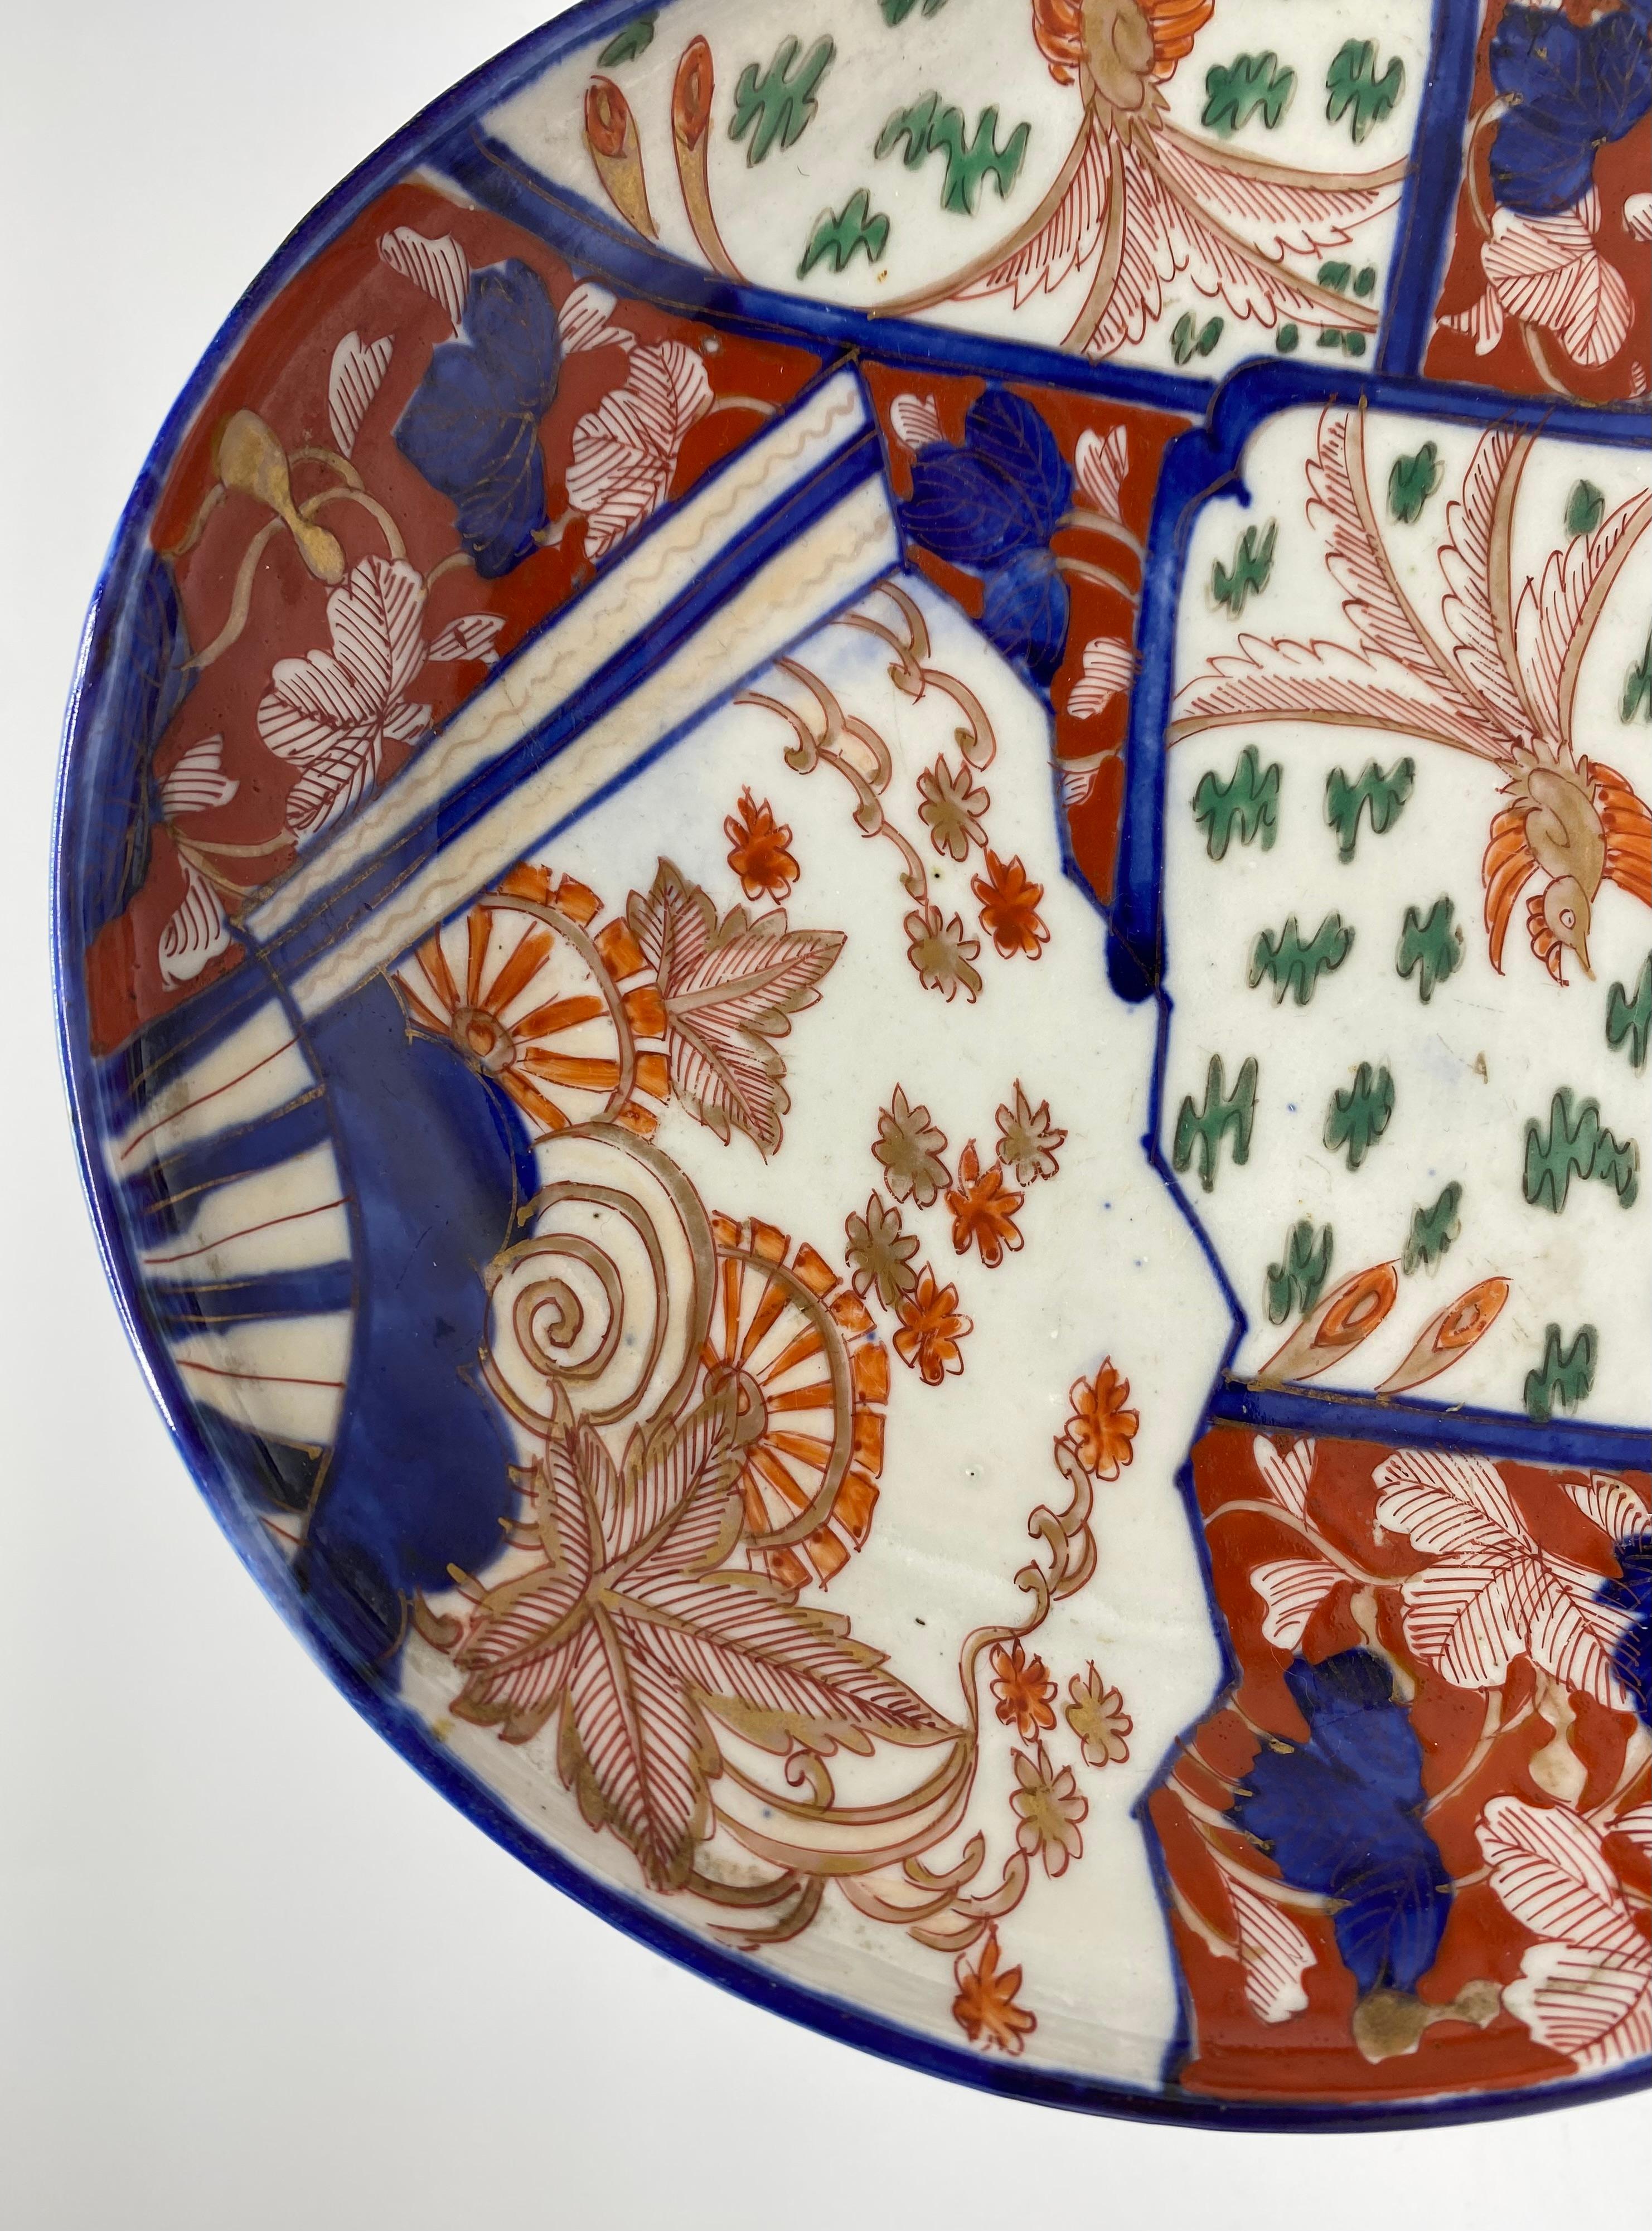 Plat en forme de gourde en porcelaine d'Imari, Arita, Japon, vers 1890, période Meiji. Ce plat inhabituel en forme de gourde est peint à la main dans les couleurs typiques d'Imari, avec des panneaux d'oiseaux volant parmi les plantes, et un panneau